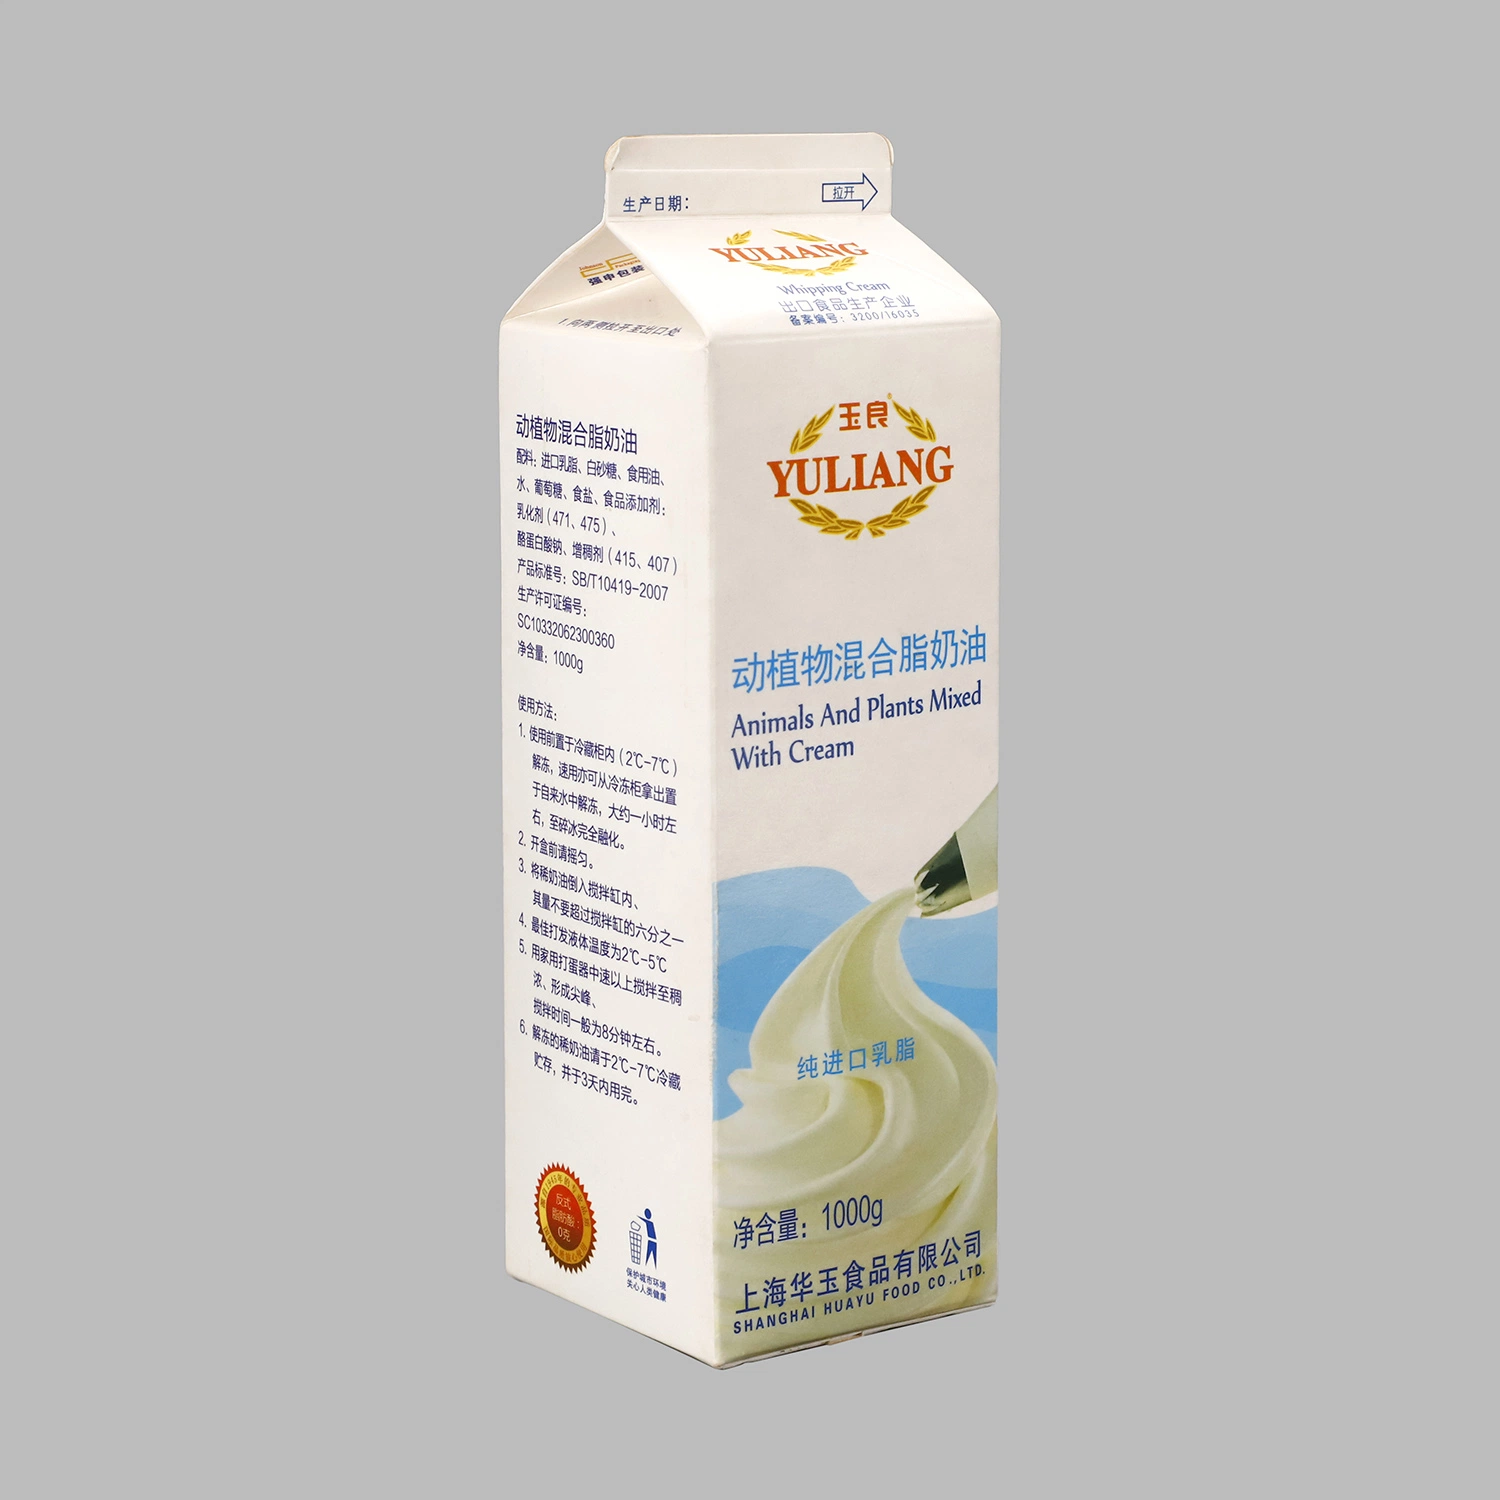 Оптовая торговля молоком сок упаковки из картона асептического днгод верхней части коробки/200ml 250 мл 500 мл 1000 мл упаковка картонная коробка Witn колпачки днгод верхней части